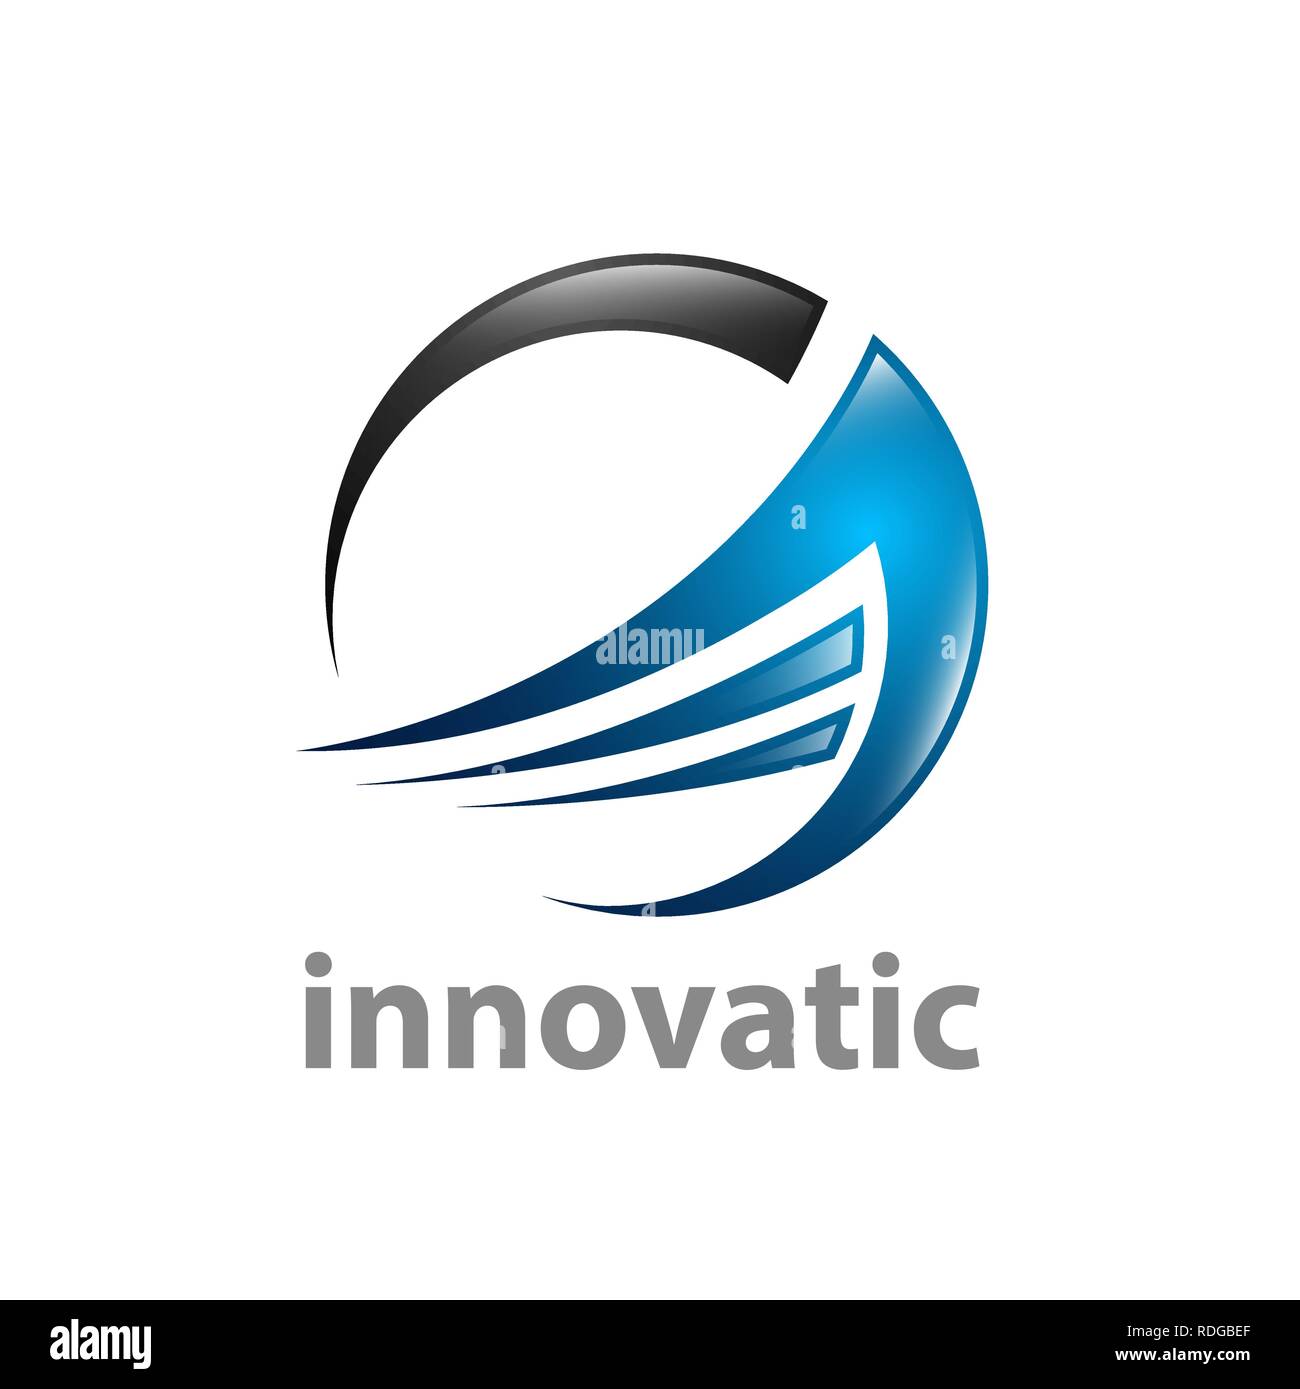 Abstrakte Kreis innovatic logo Konzept Design. Symbol grafische Vorlage element Vektor Stock Vektor